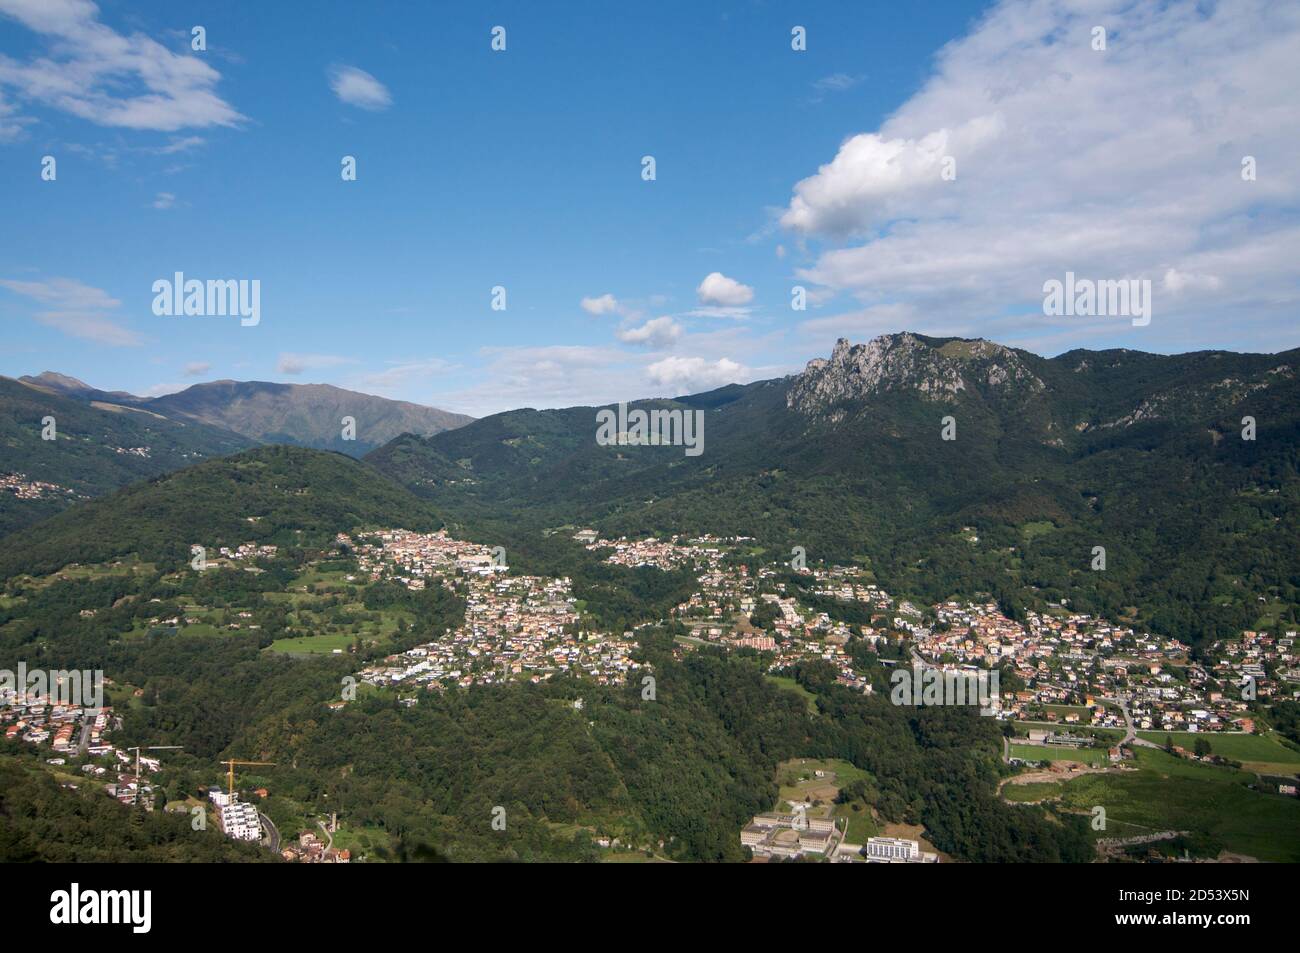 Panoramic view of the villages Tesserete, Lugaggia, Sonvico, Cadro and the Denti della Vecchia mountains located in the Canton Ticino in Switzerland Stock Photo